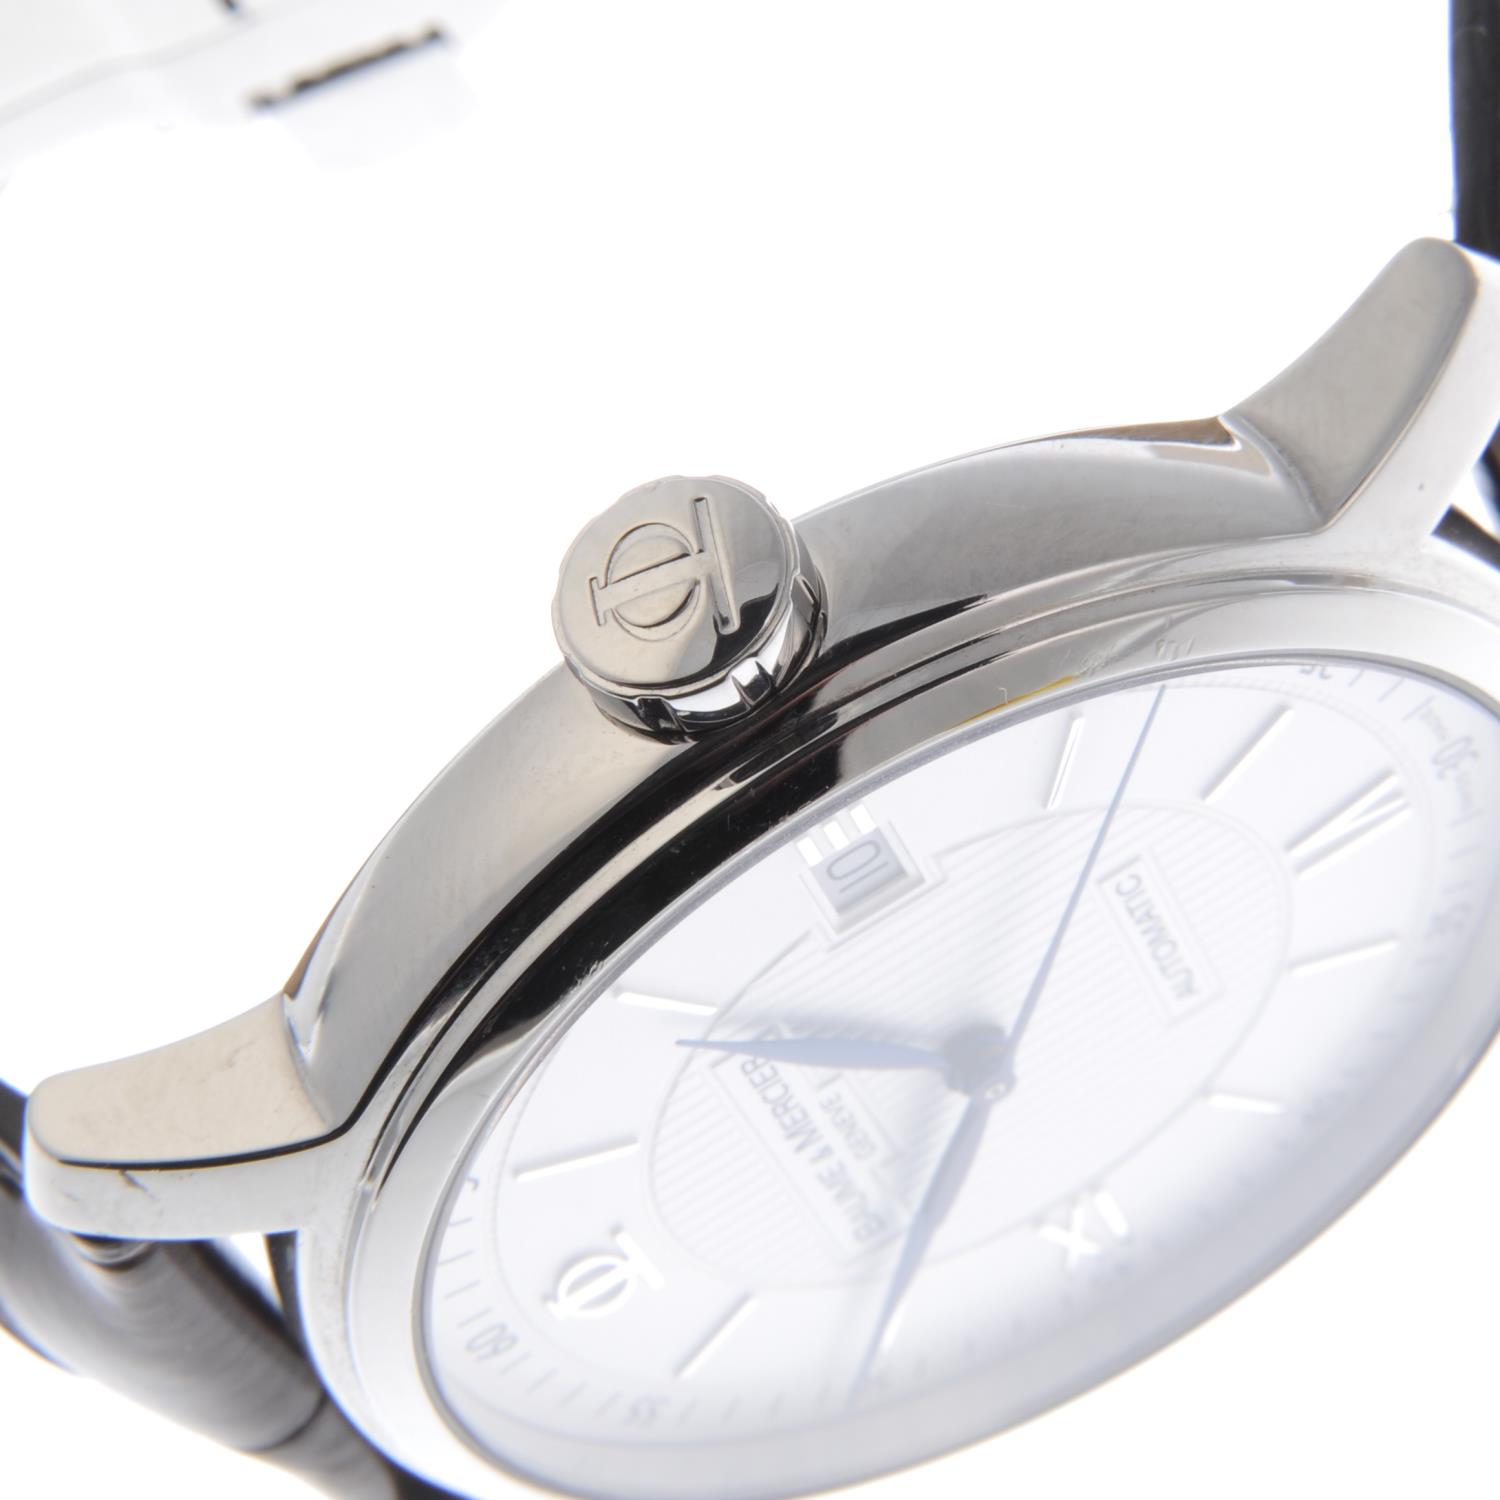 BAUME & MERCIER - a gentleman's Classima wrist watch. - Image 4 of 4